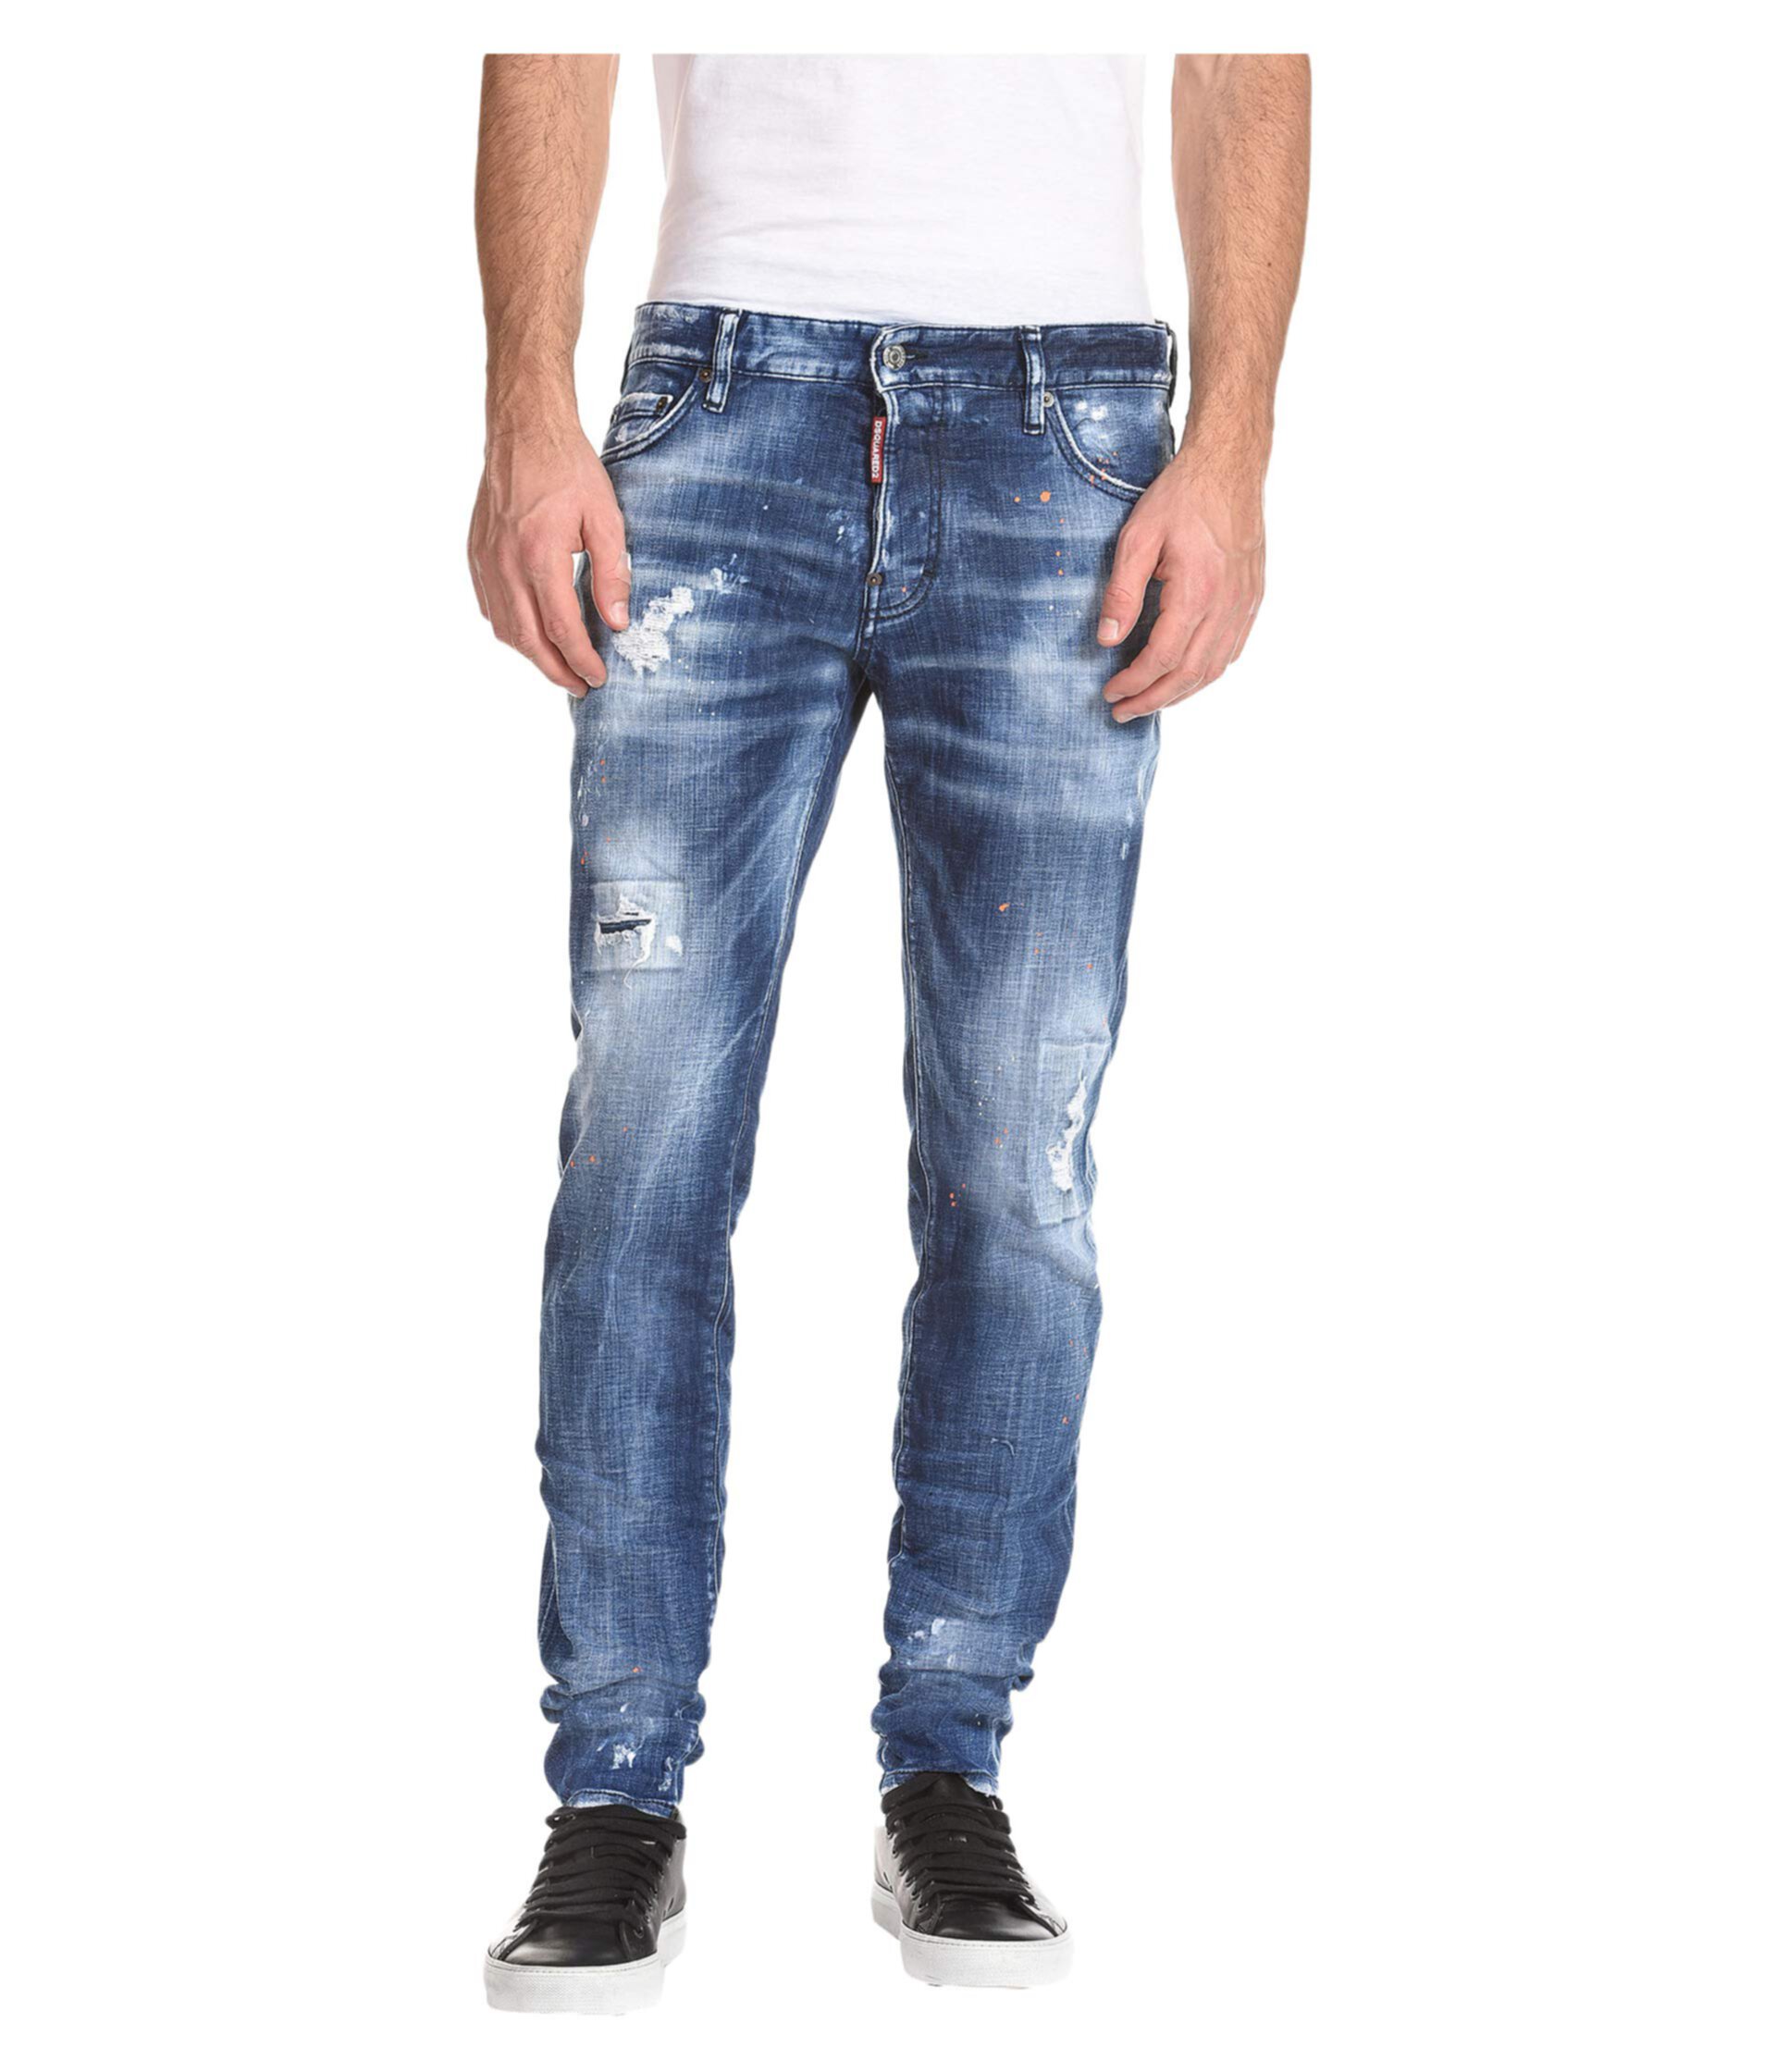 Узкие джинсы средней длины в деревенском стиле синего цвета DSQUARED2